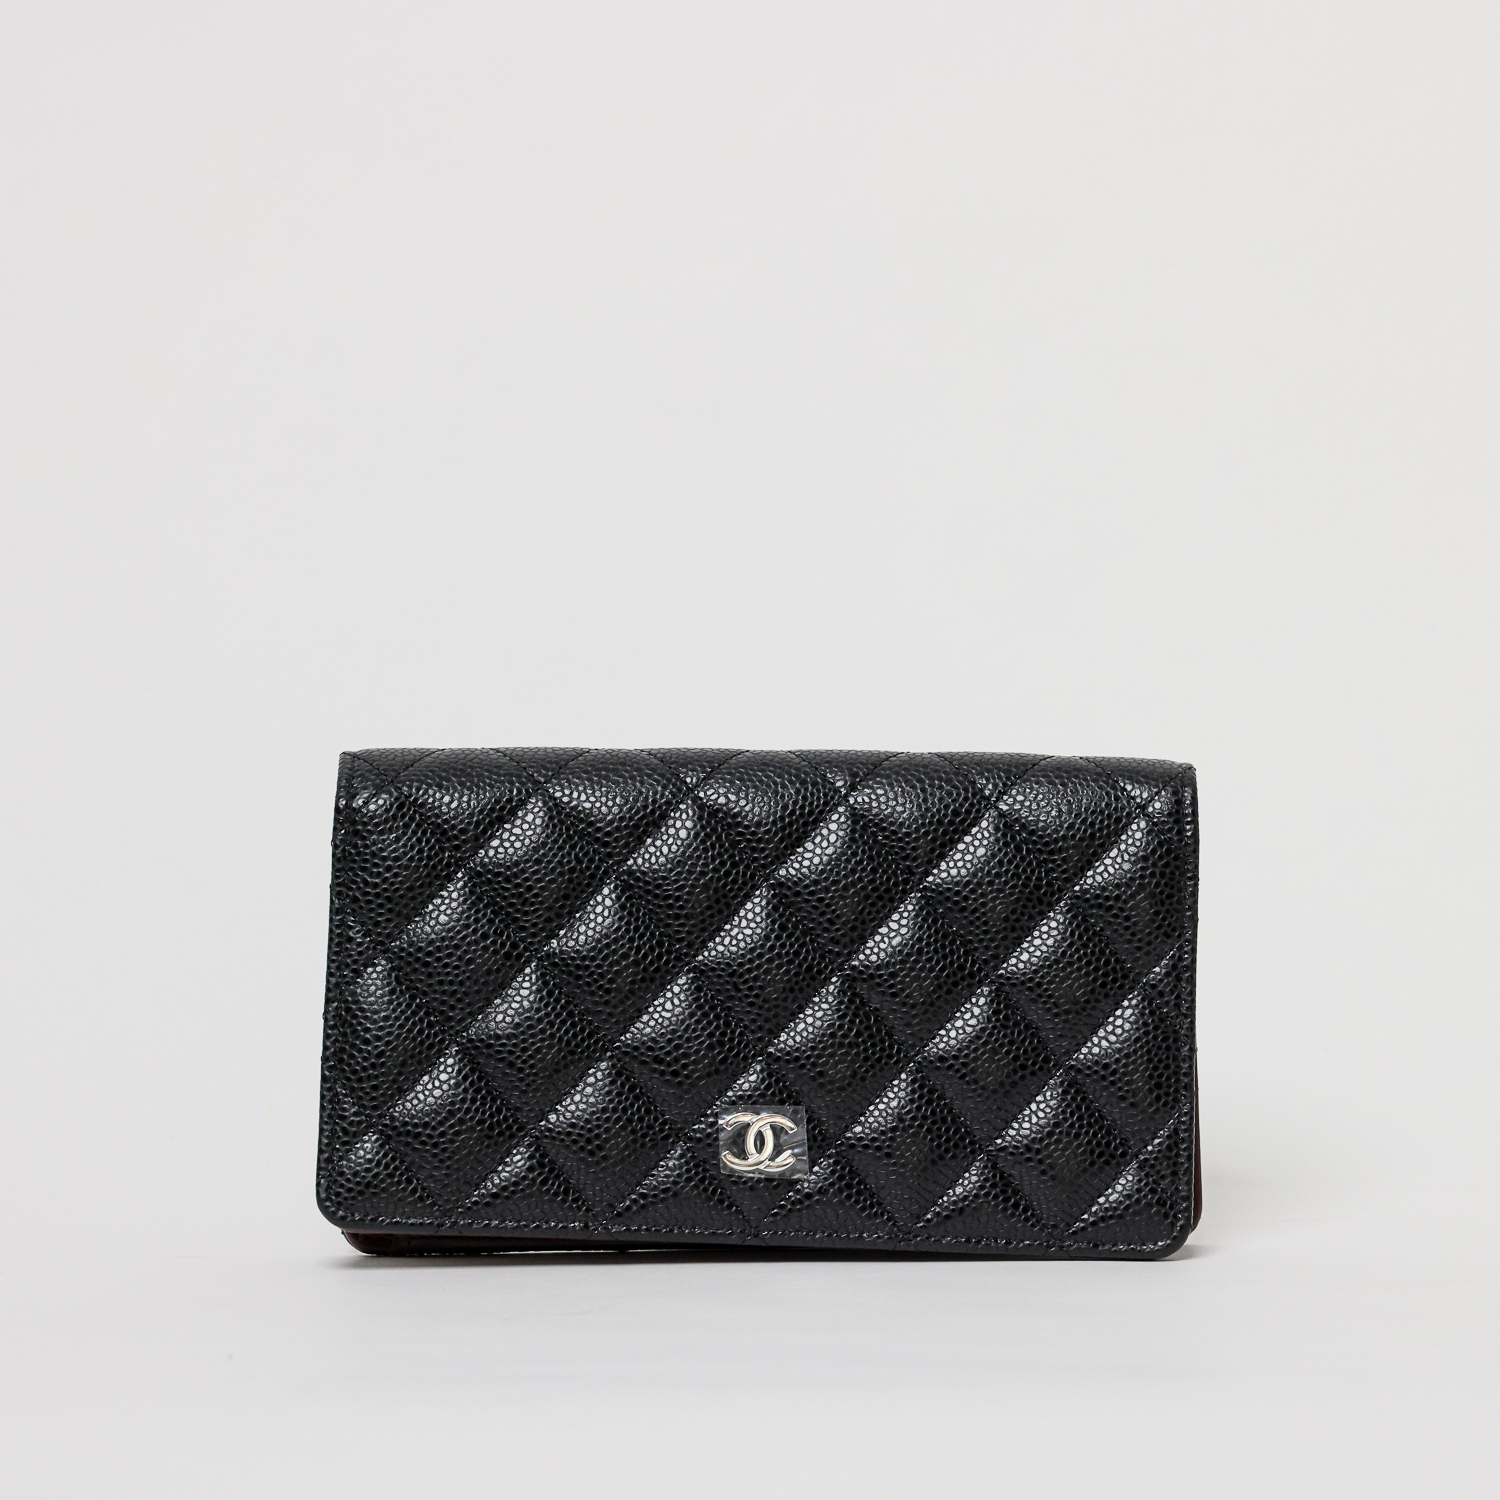 Chanel Patentbrieftasche Long Wallet Caviar Schwarz mit silberner Hardware Full Set